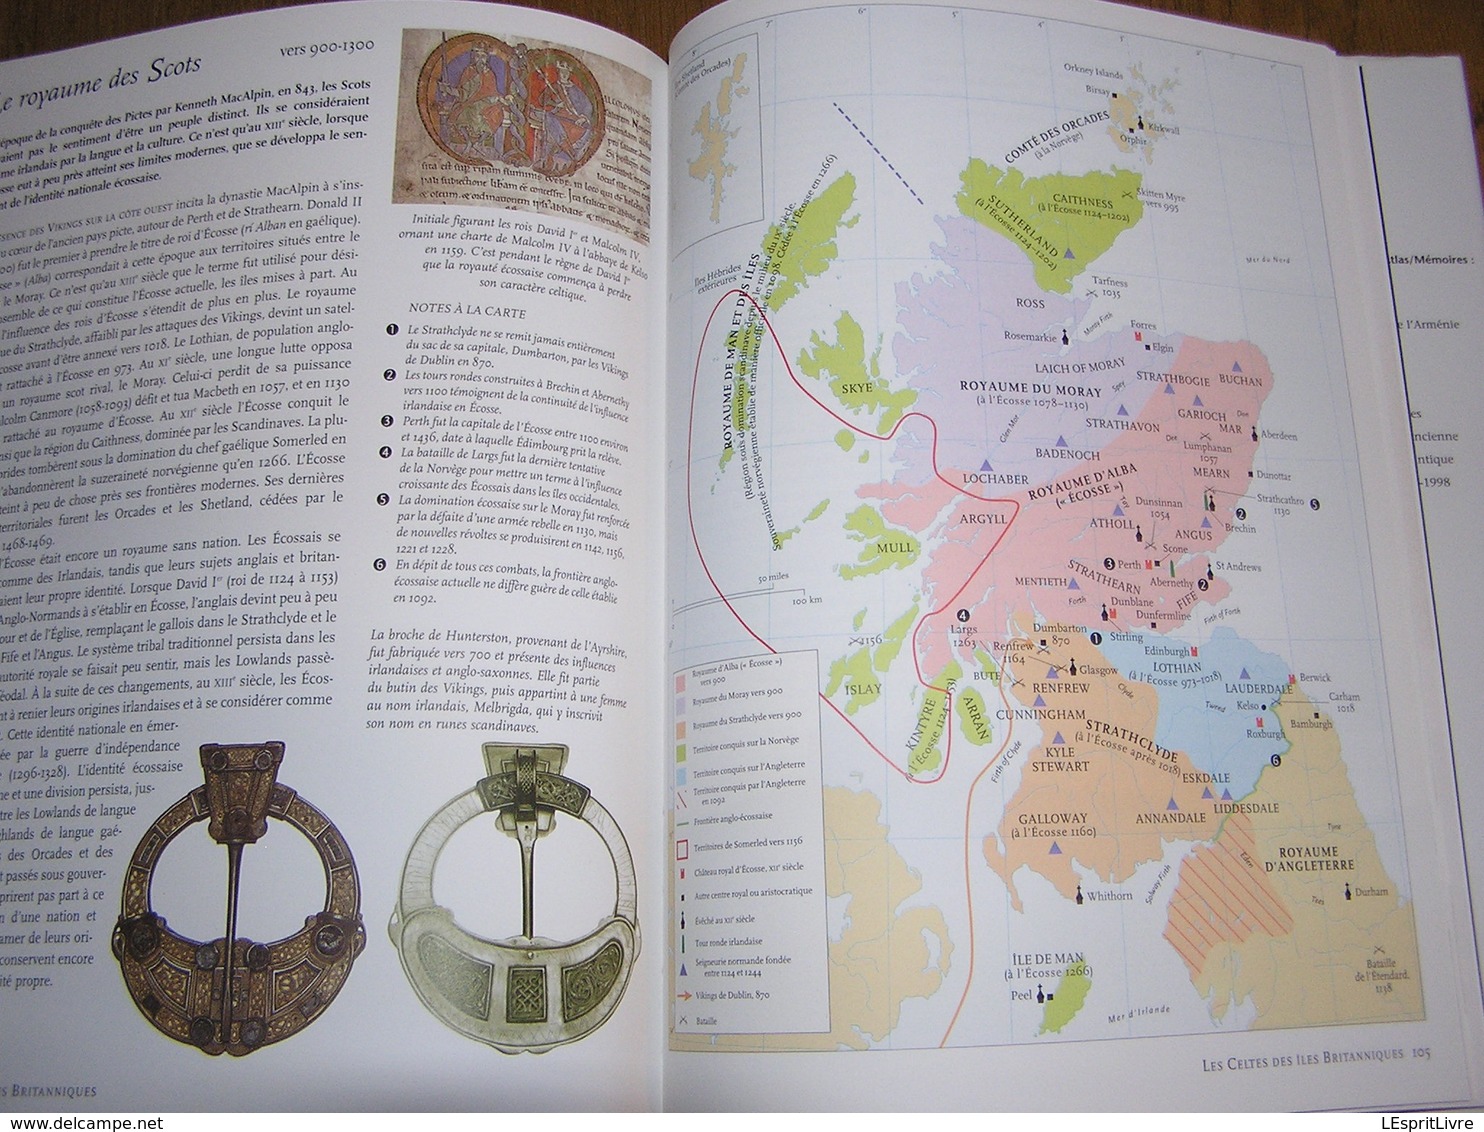 ATLAS HISTORIQUE DES CELTES Moyen Age Europe Gaule France Grande Bretagne Irlande Italie Ecosse Pays de Galles Normand